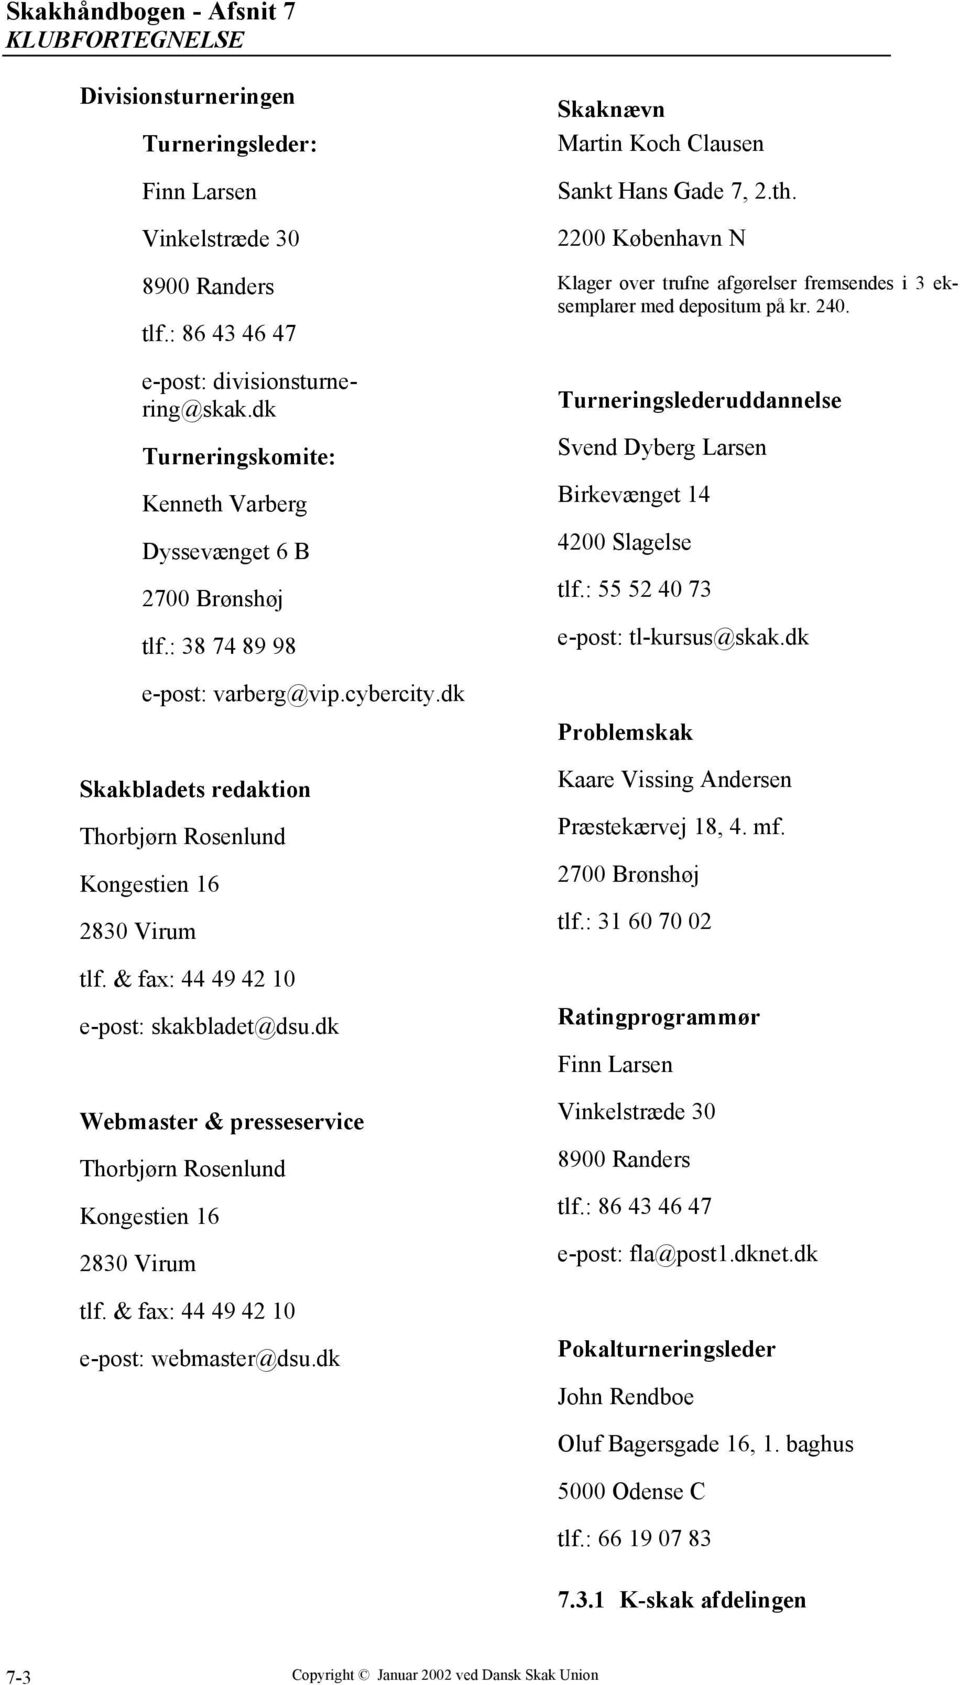 Skakhåndbogen - Afsnit 7 KLUBFORTEGNELSE - PDF Gratis download